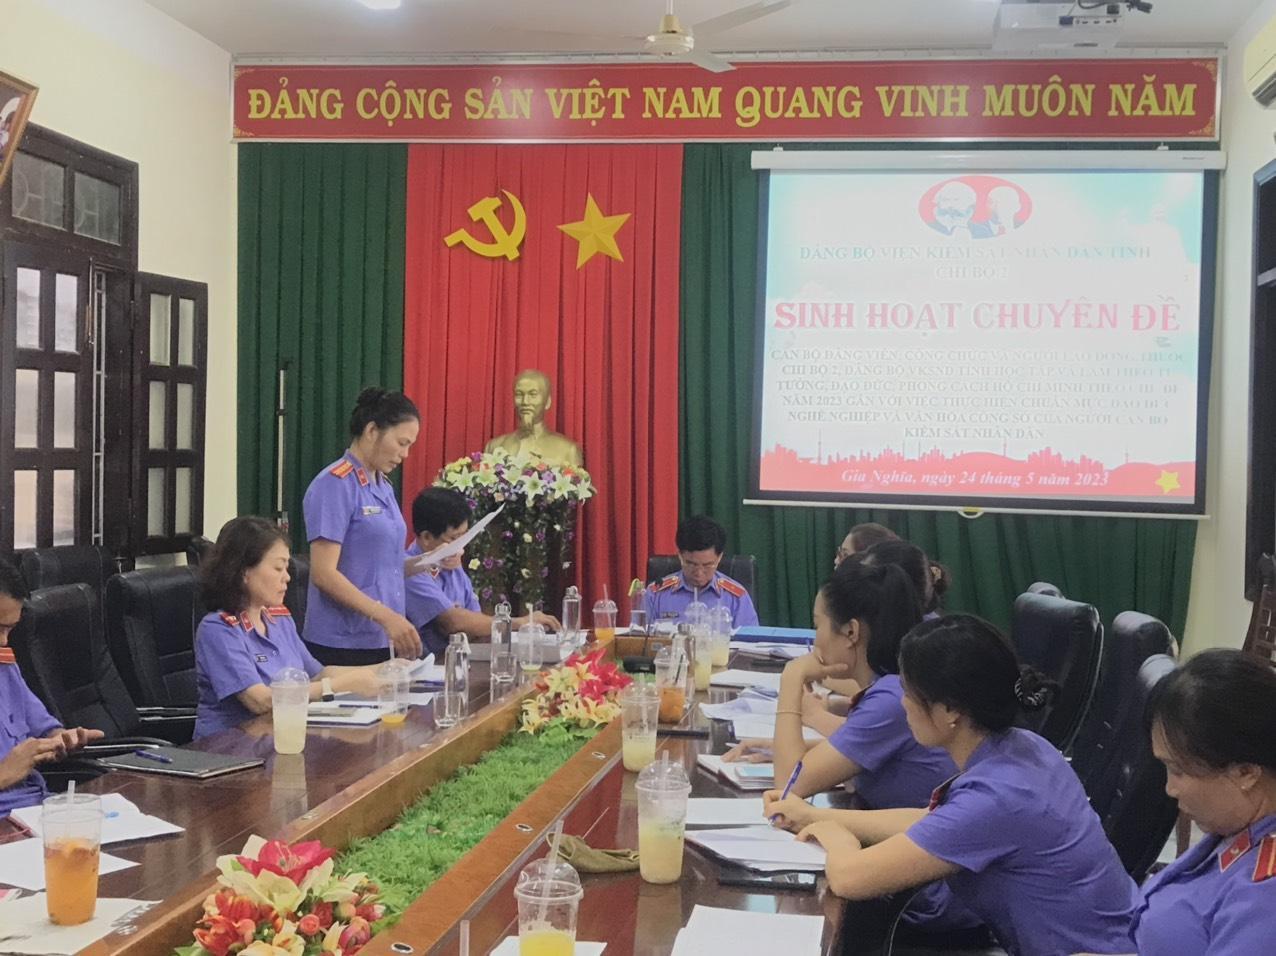 Thực hiện chuẩn mực đạo đức nghề nghiệp và văn hóa công sở của người cán bộ kiểm sát nhân dân tỉnh Đắk Nông